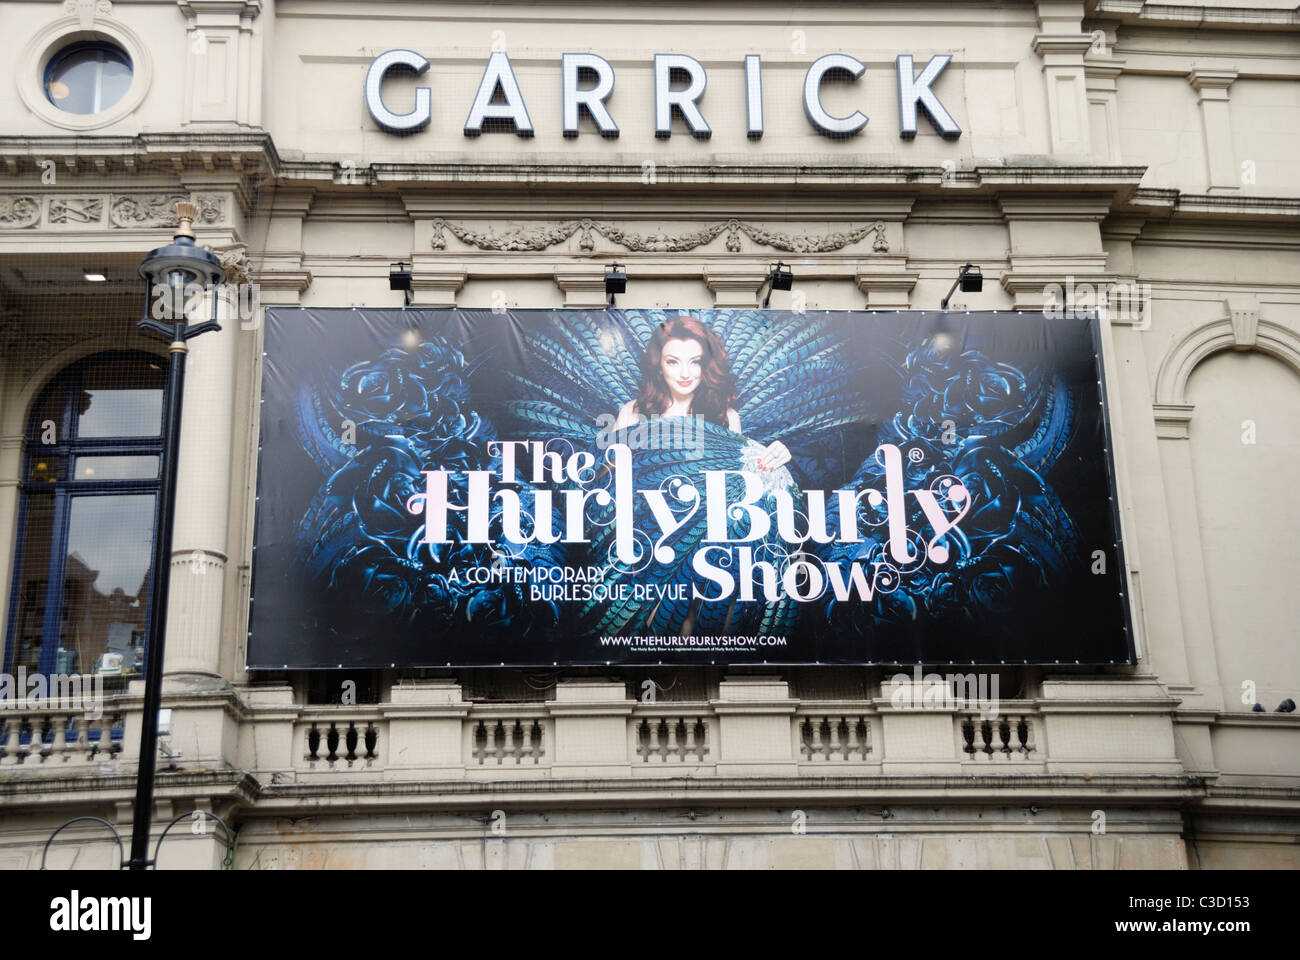 Affissioni promuovendo la Hurly Burly Show, burlesco-ispirato revue, Londra, Inghilterra Foto Stock